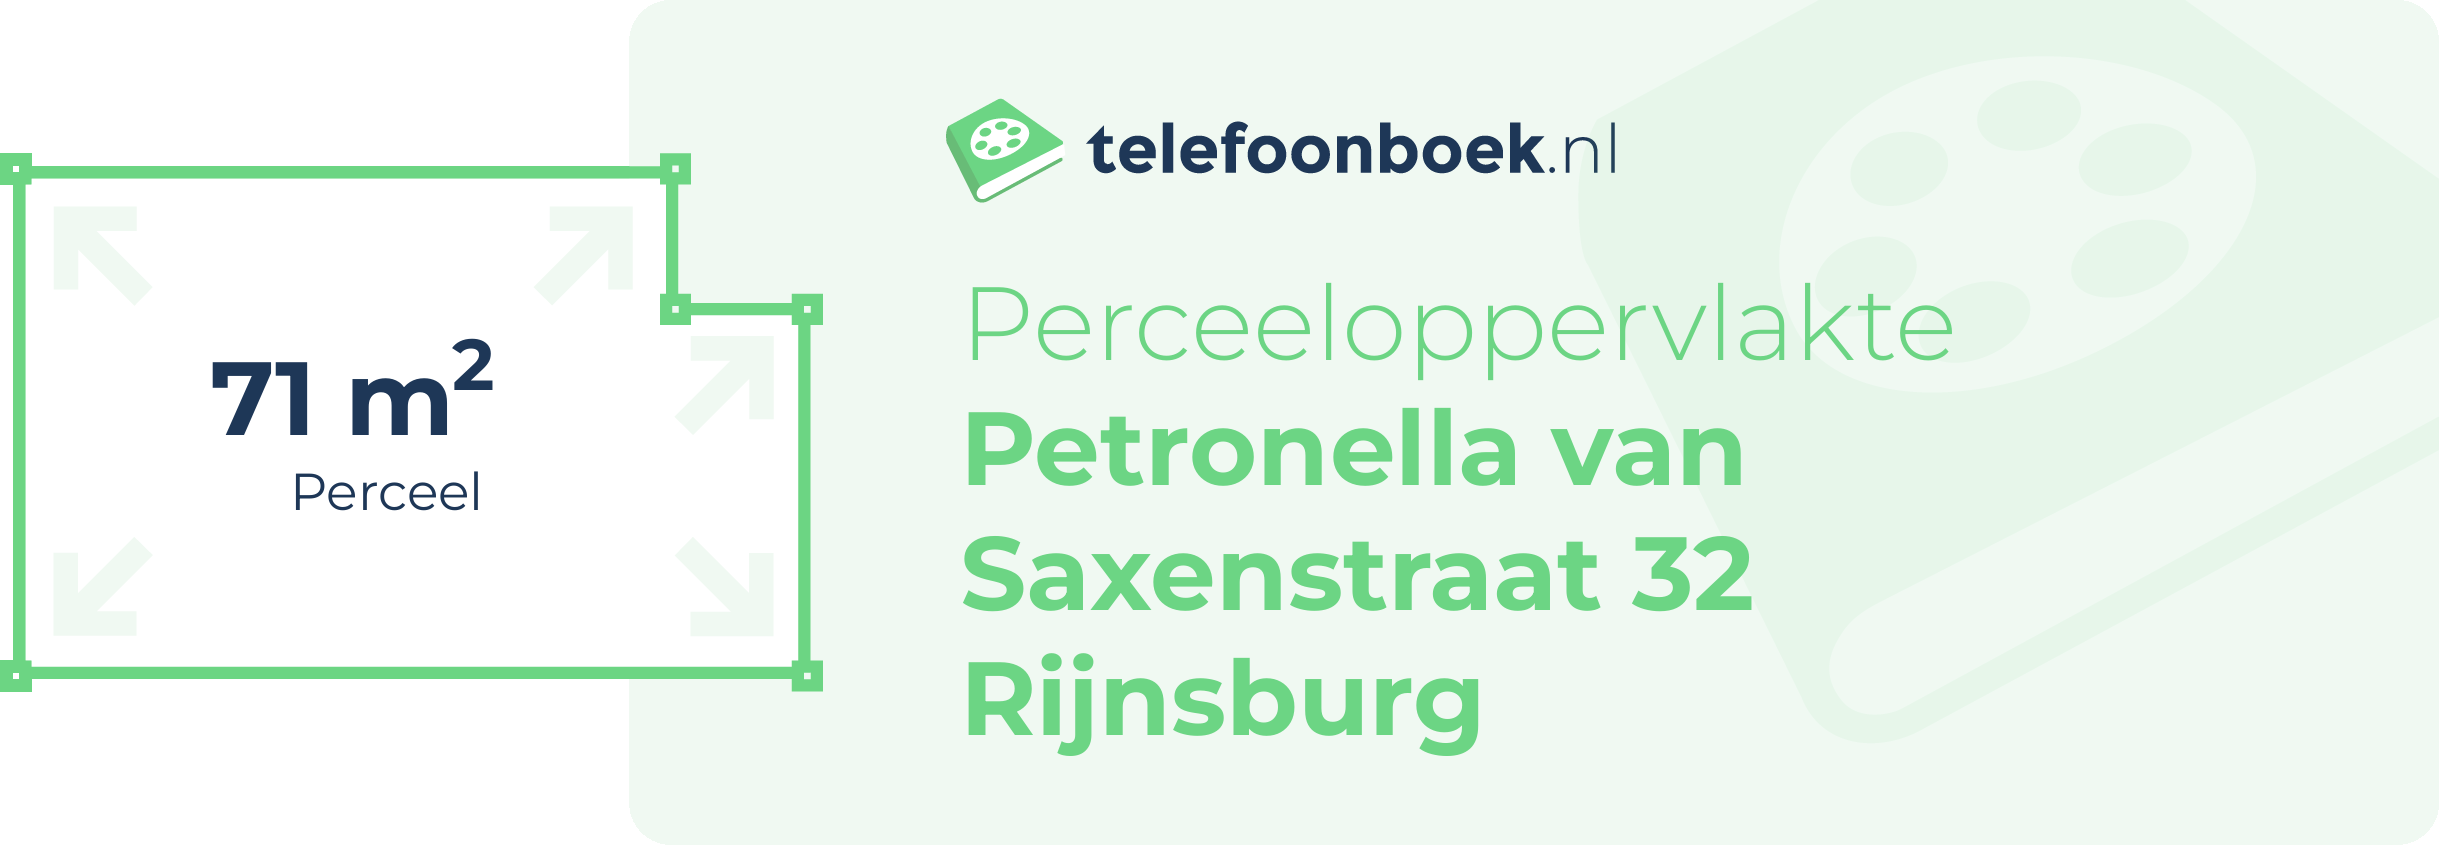 Perceeloppervlakte Petronella Van Saxenstraat 32 Rijnsburg